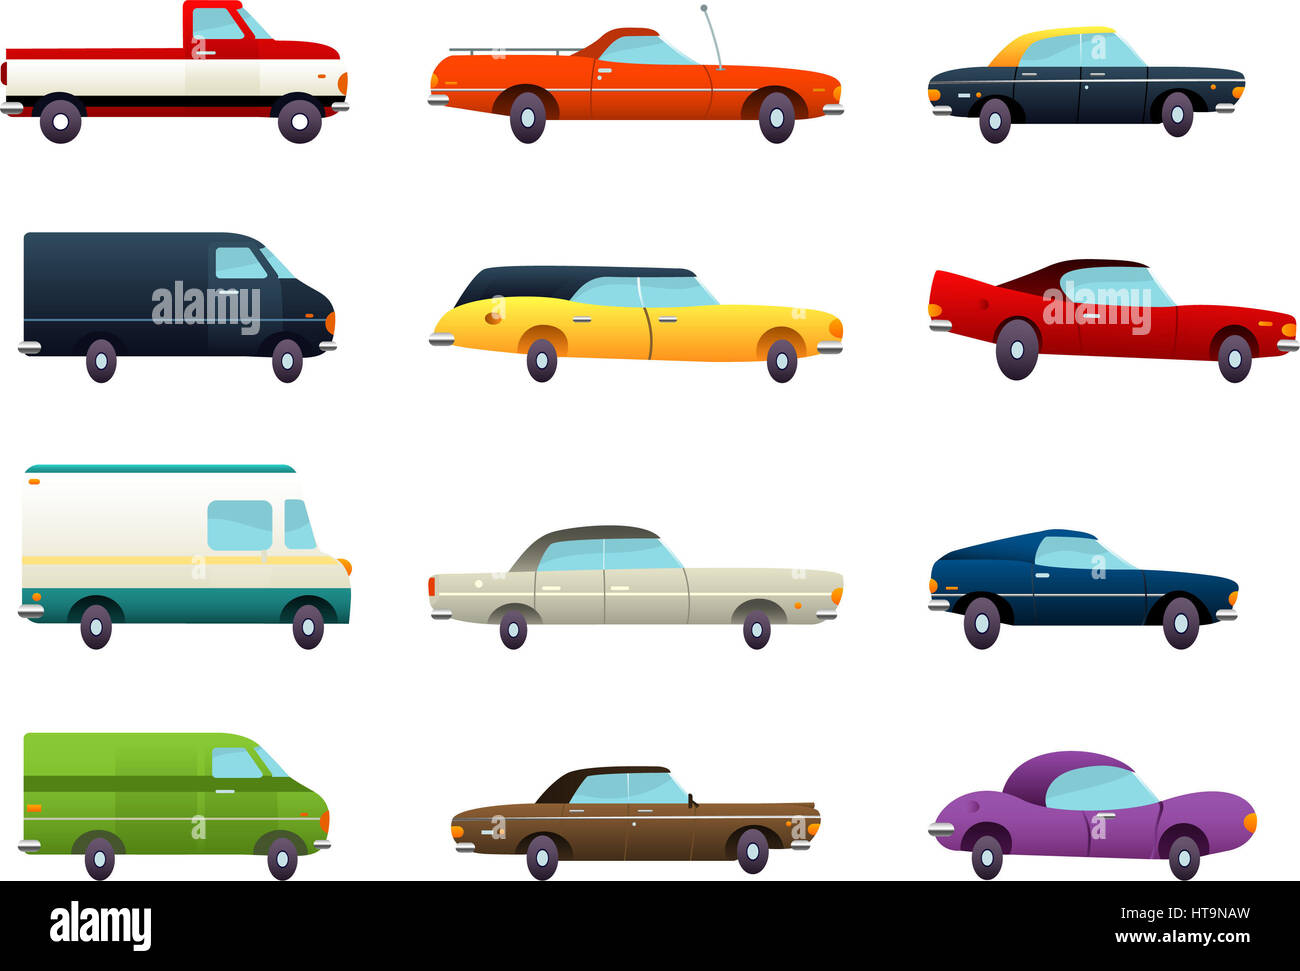 Douze caricatures car collection, avec différentes tailles et couleurs illustration vectorielle. Banque D'Images